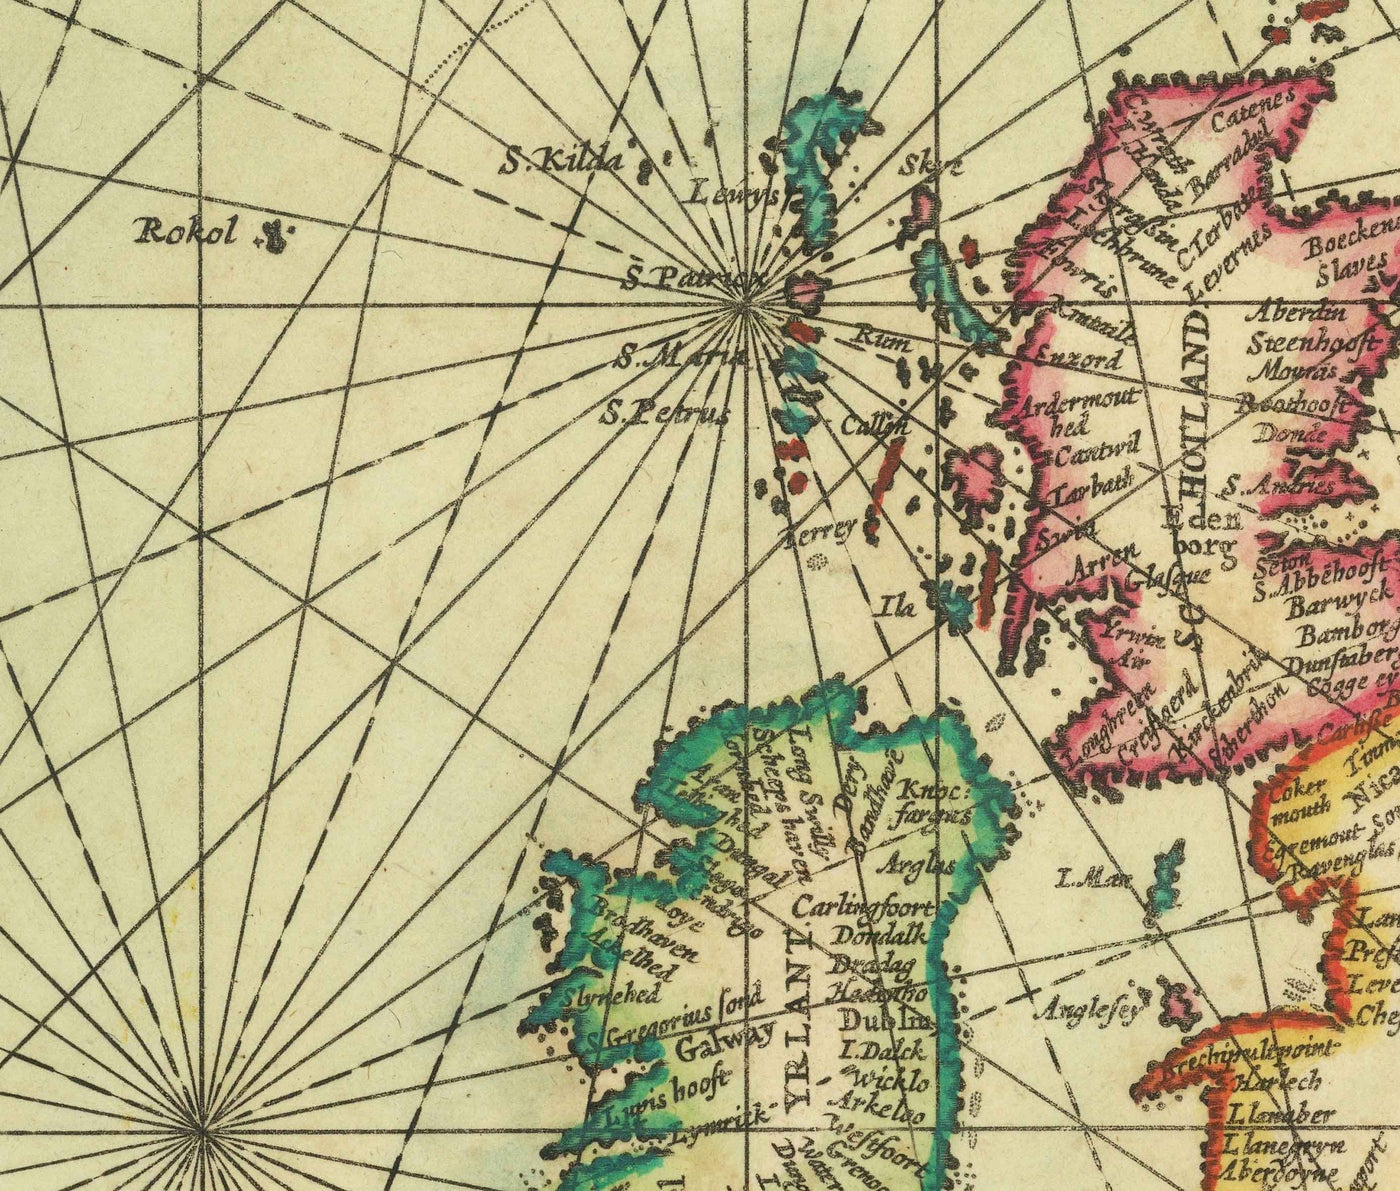 Ancienne carte du Groenland, de l'Islande et de la mer du Nord, 1661 par van Loon - Carte d'exploration viking